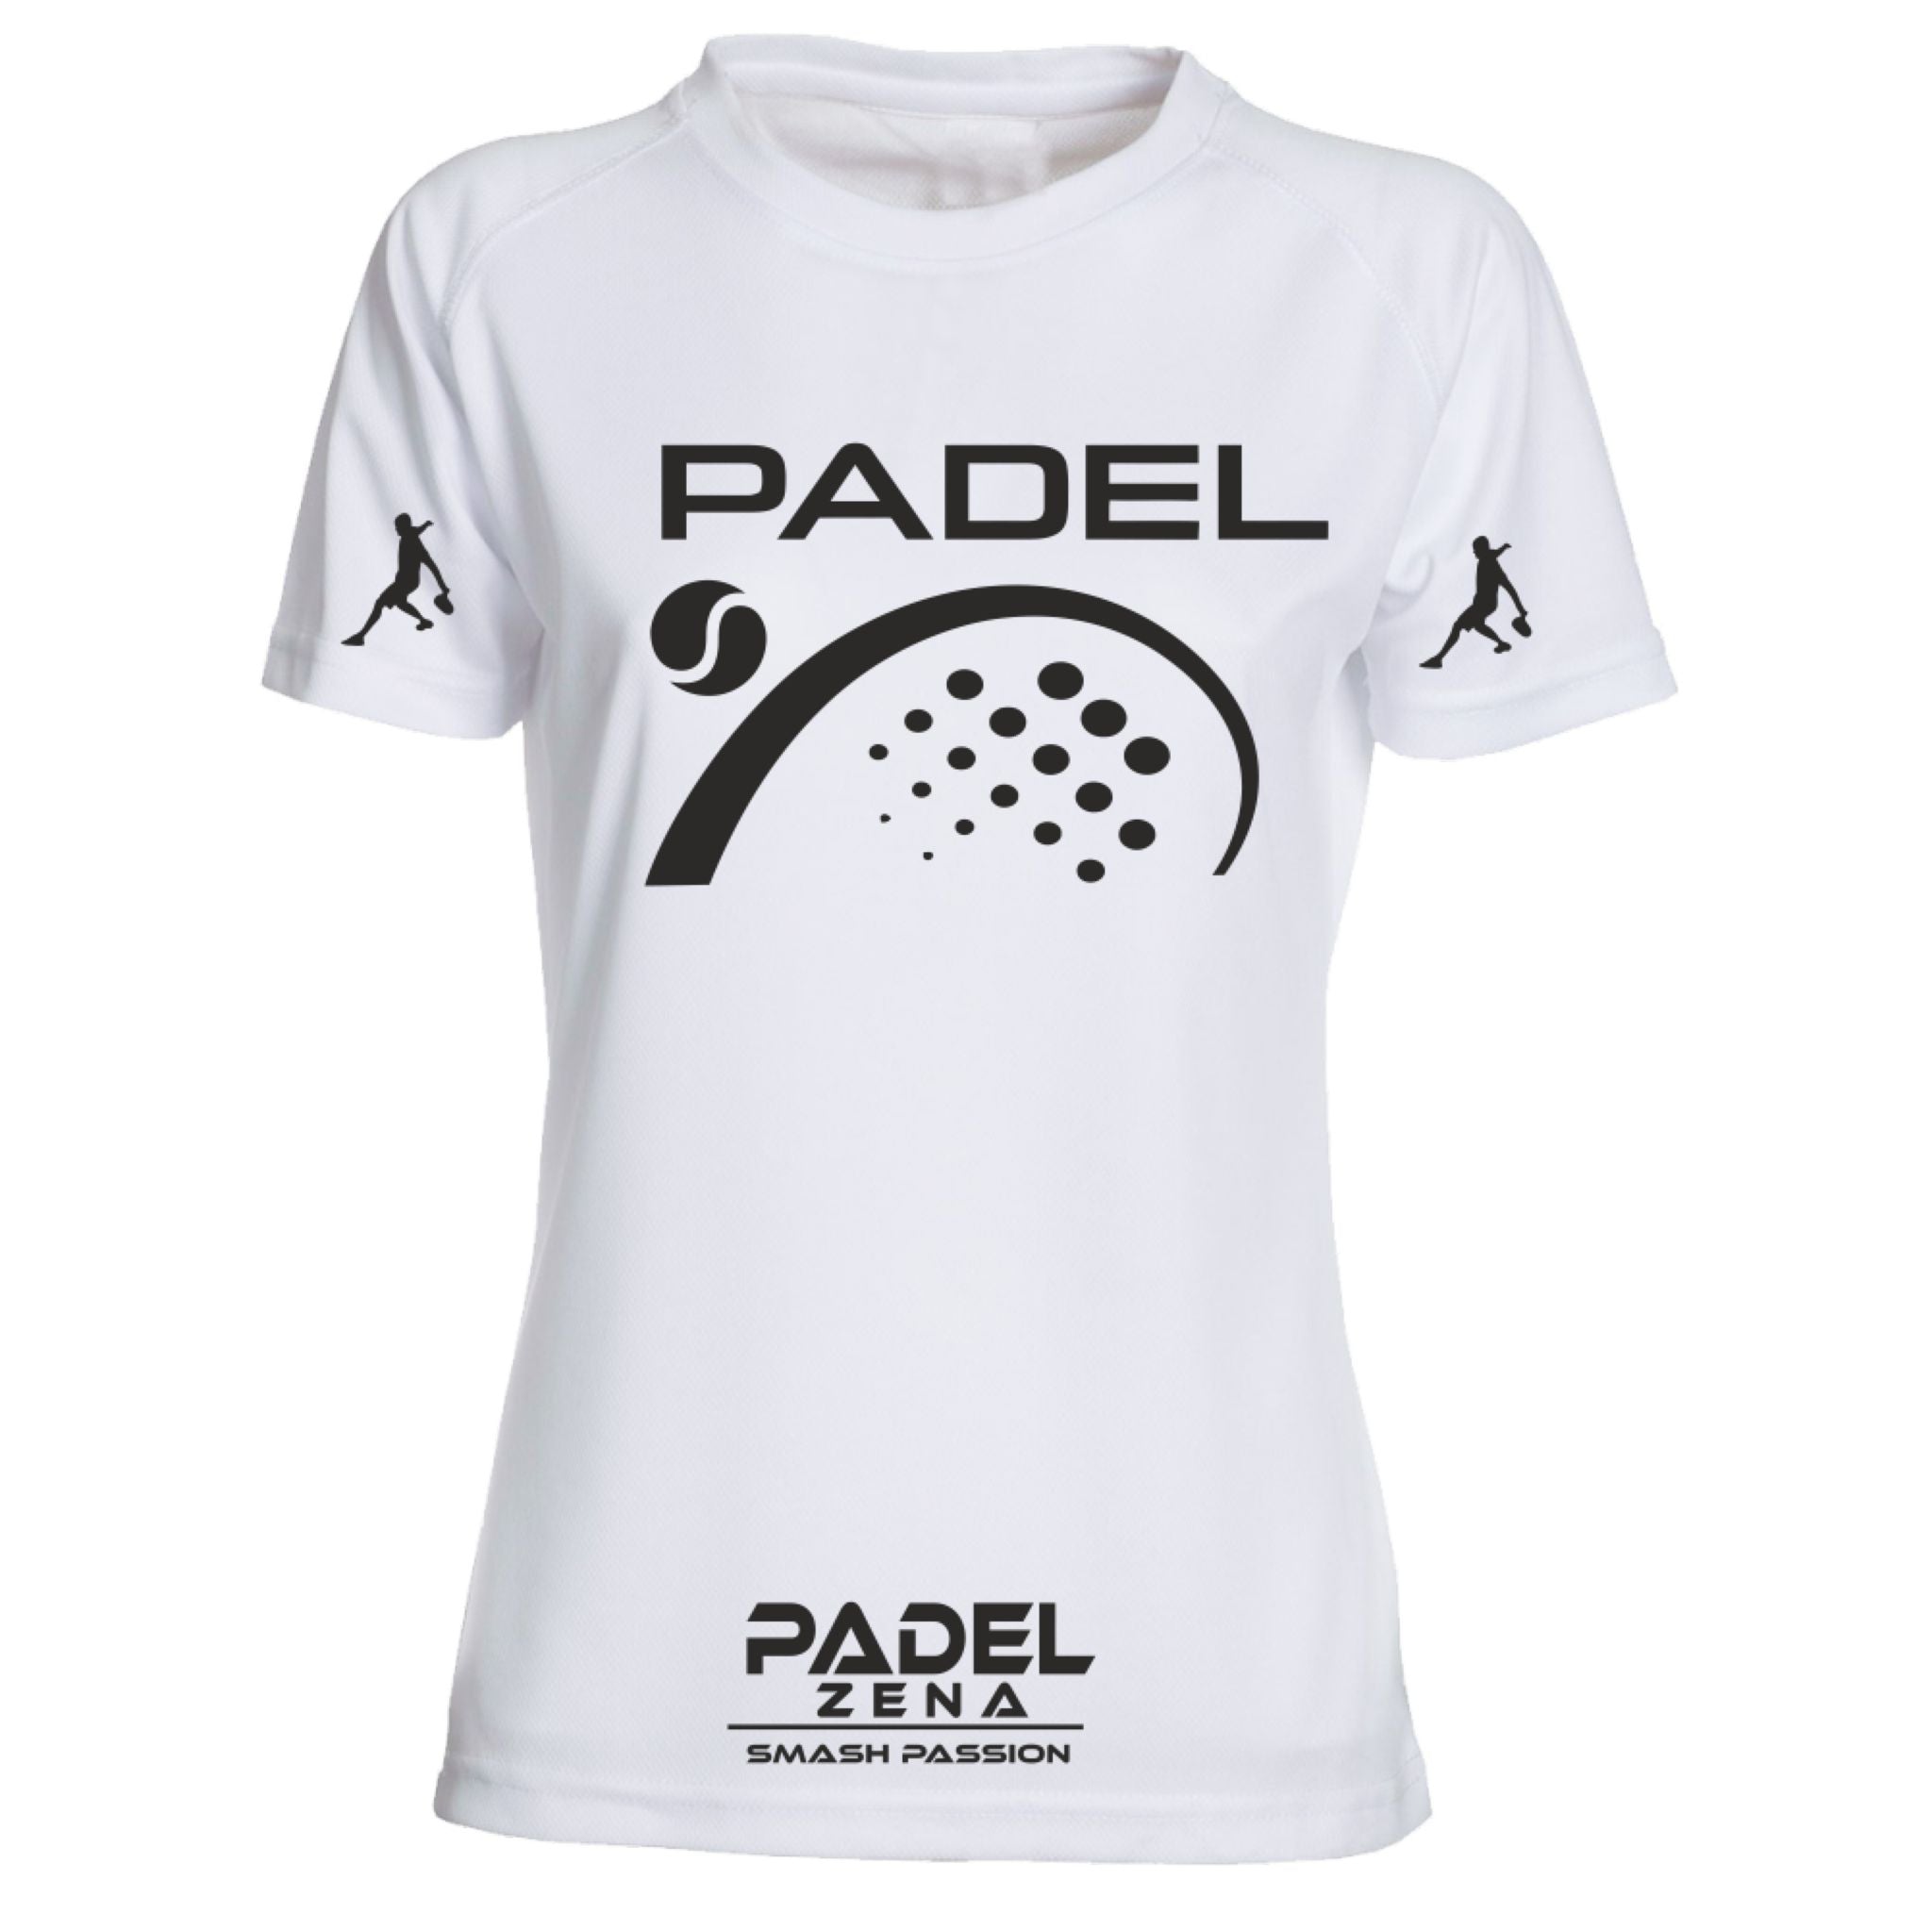 T-Shirt Padel Woman - Padel2